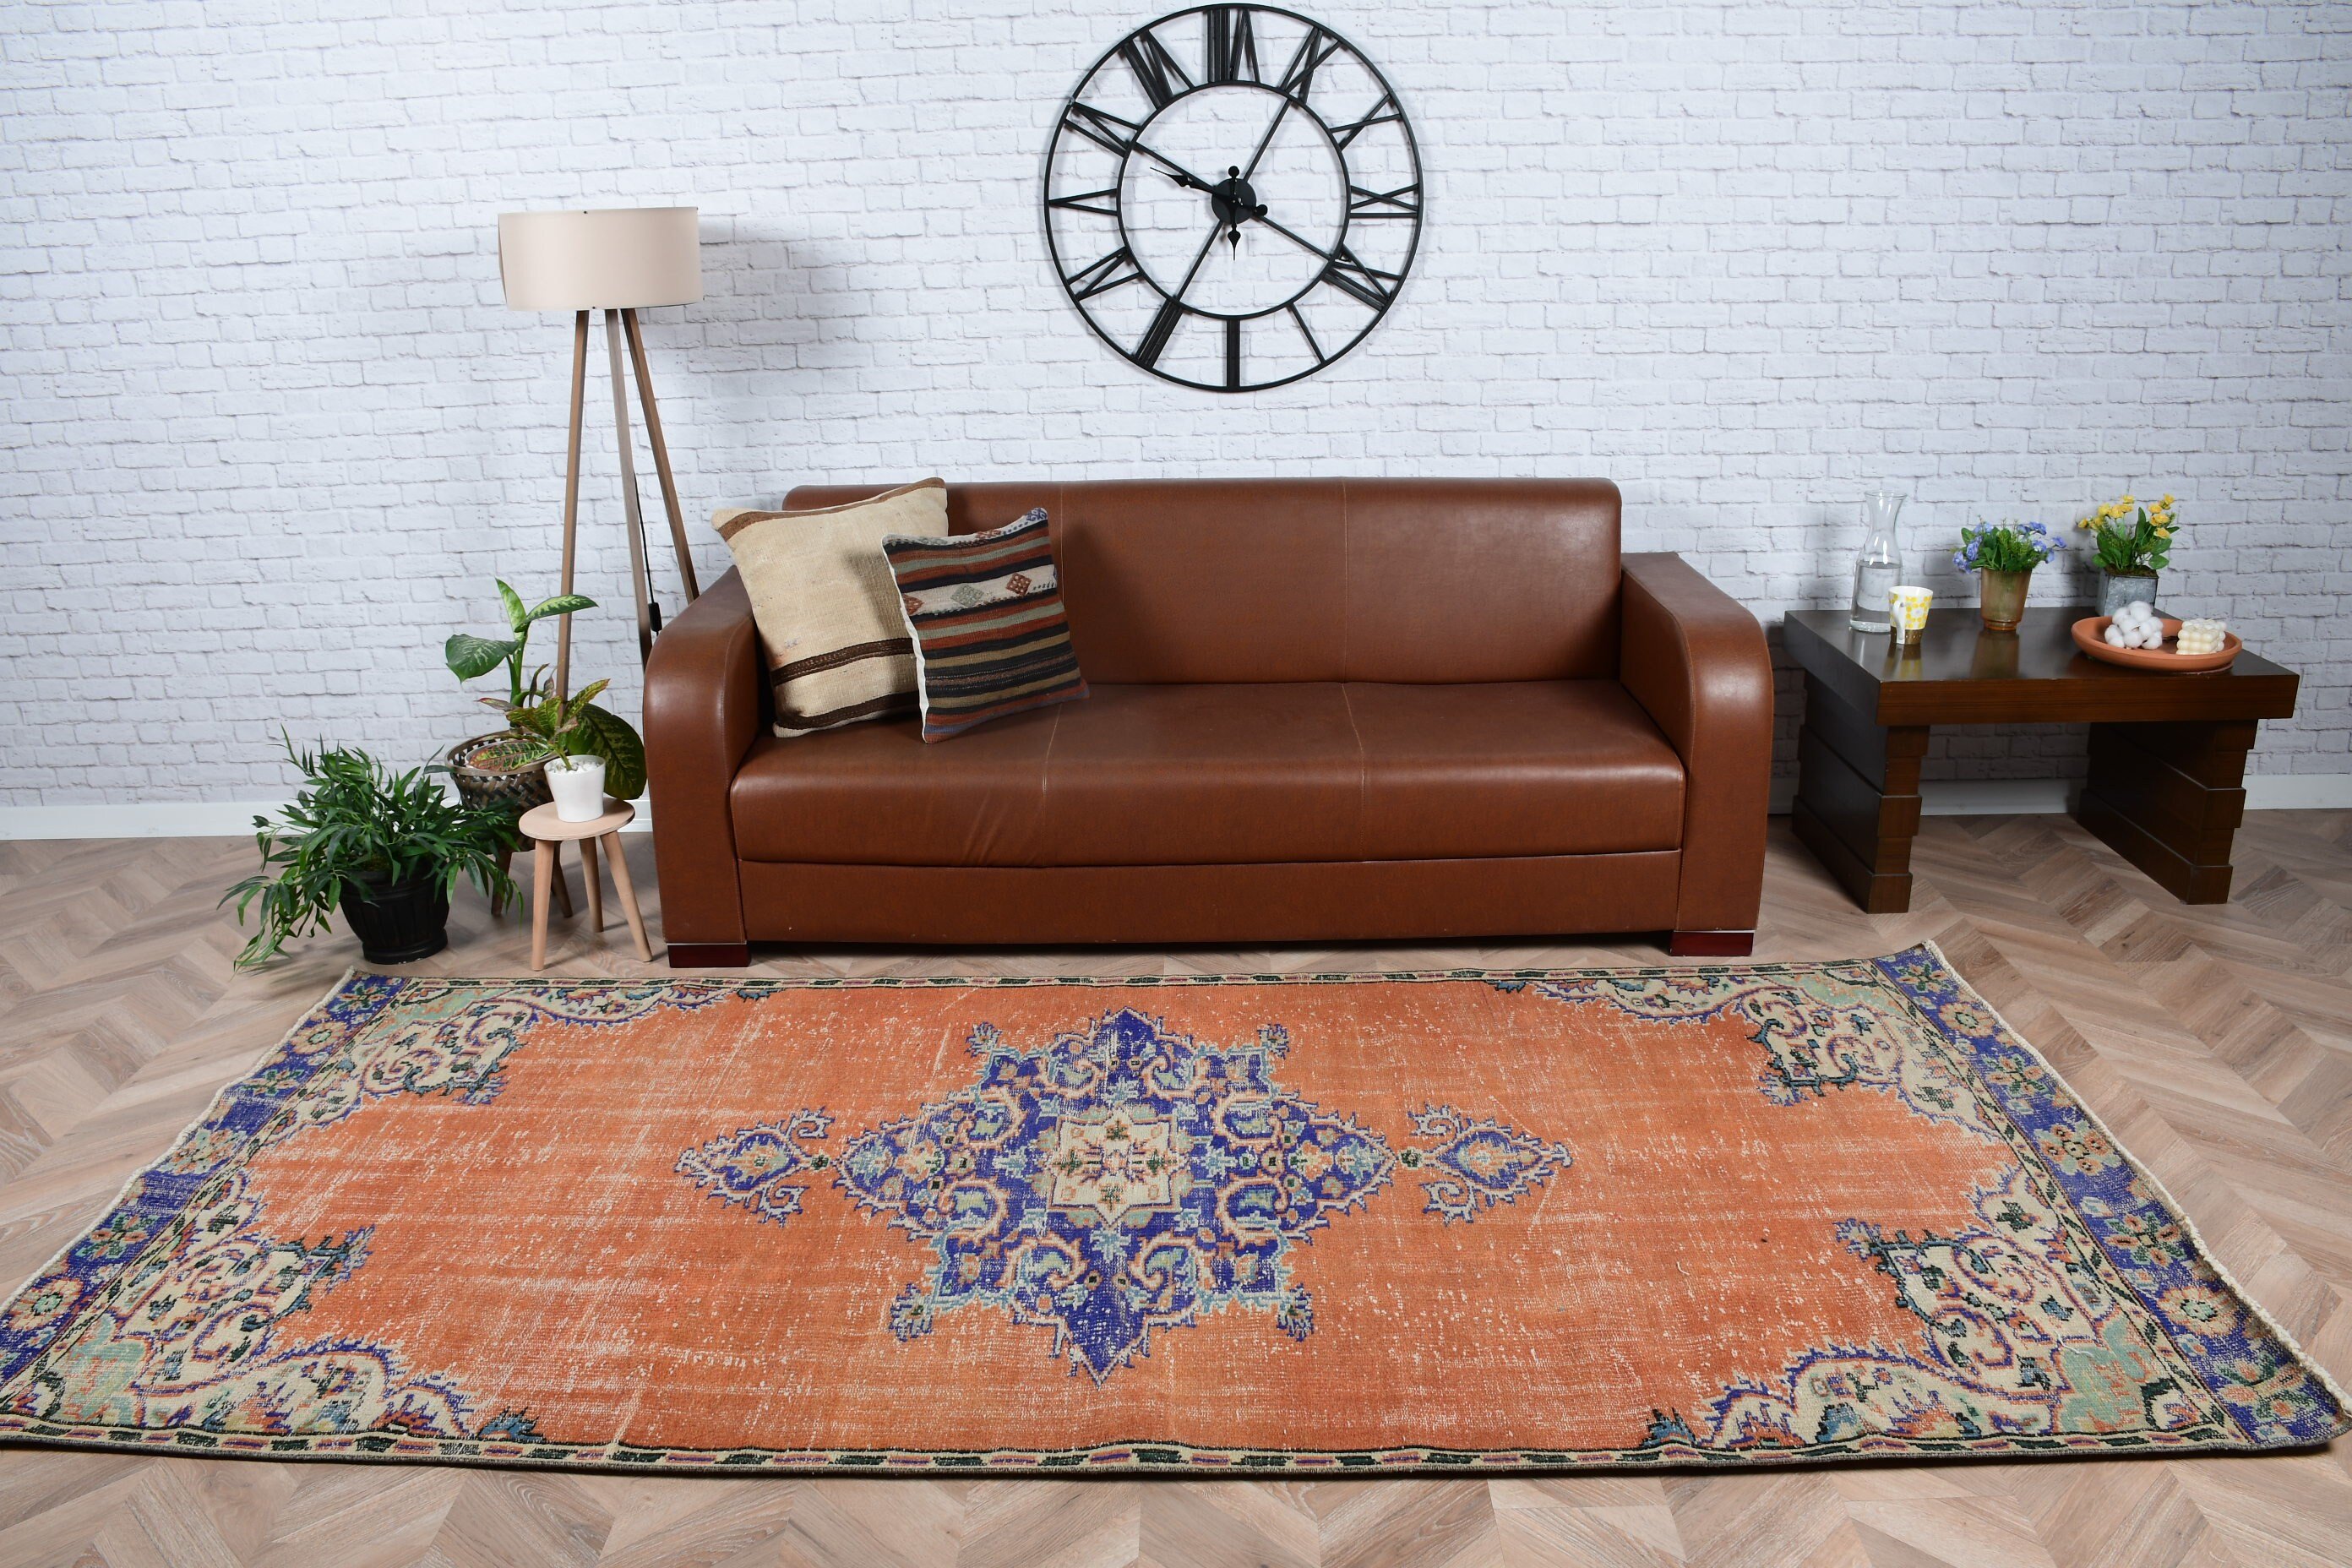 Turkish Rug, Designer Rug, Orange Moroccan Rug, Salon Rug, Vintage Rug, Kitchen Rugs, Living Room Rug, Anatolian Rug, 4.4x9.5 ft Large Rug